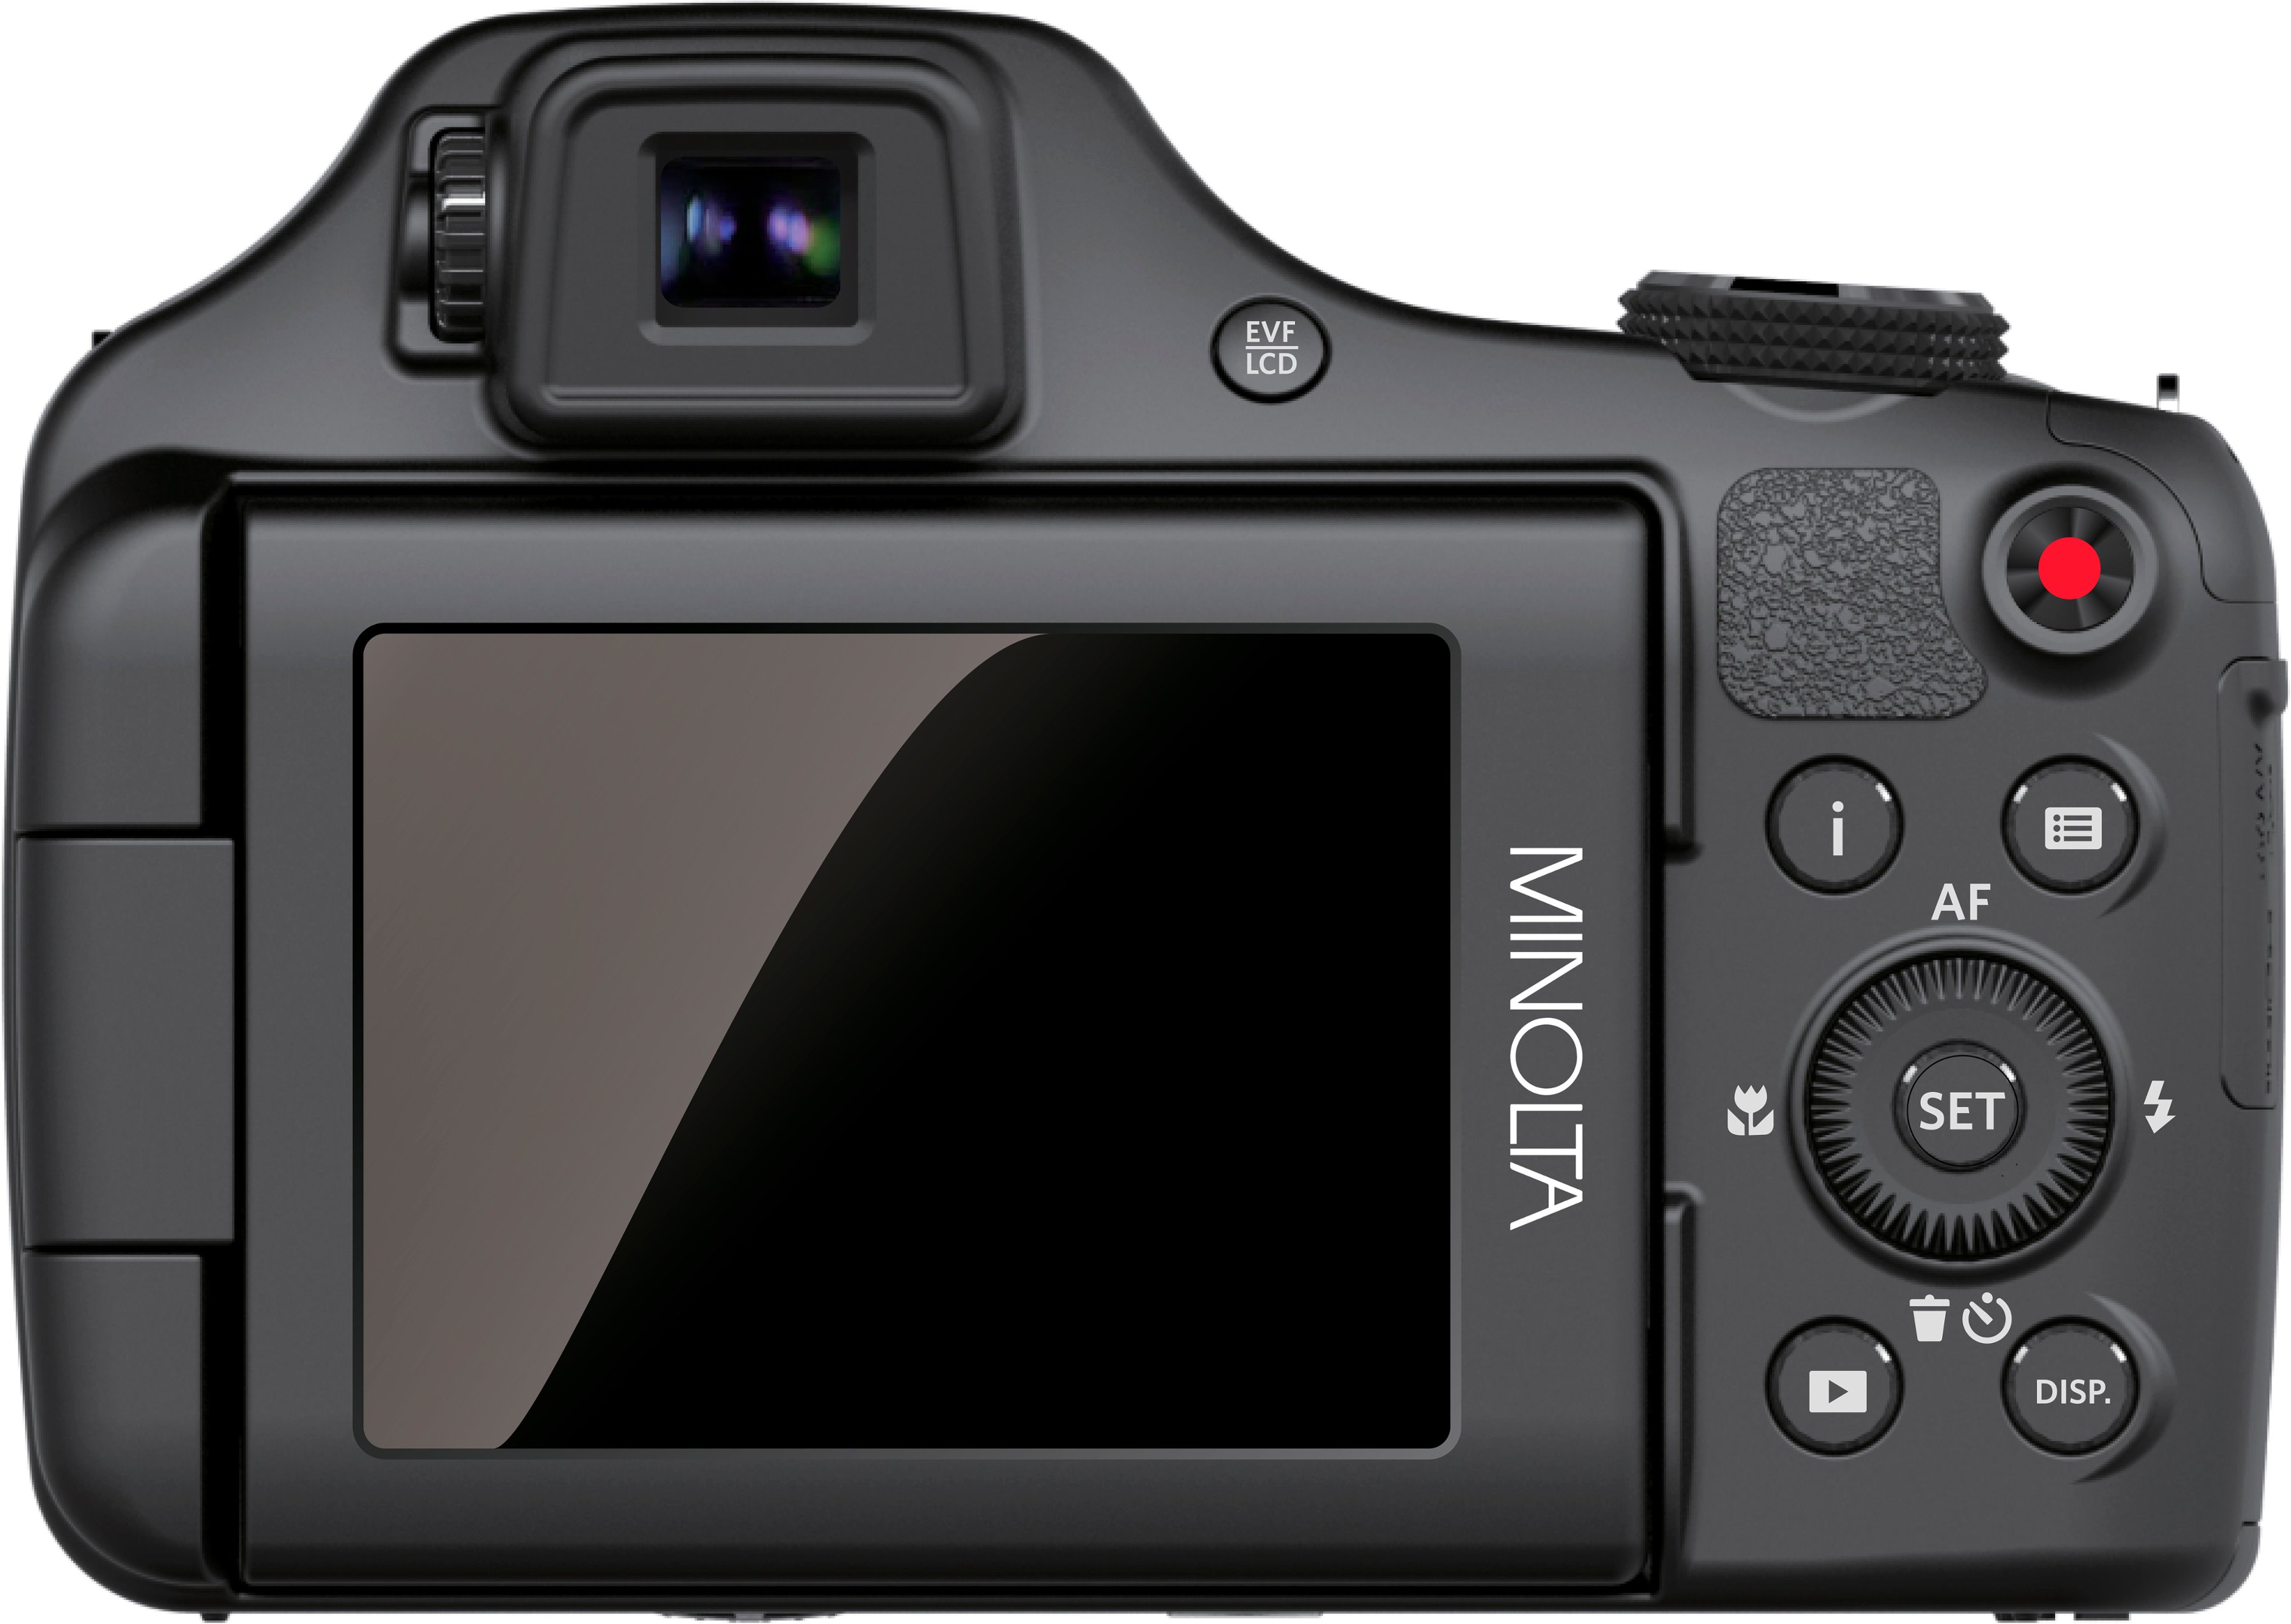 Minolta ProShot MN67Z 20.0 Megapixel Digital Camera Black MN67Z-BK 